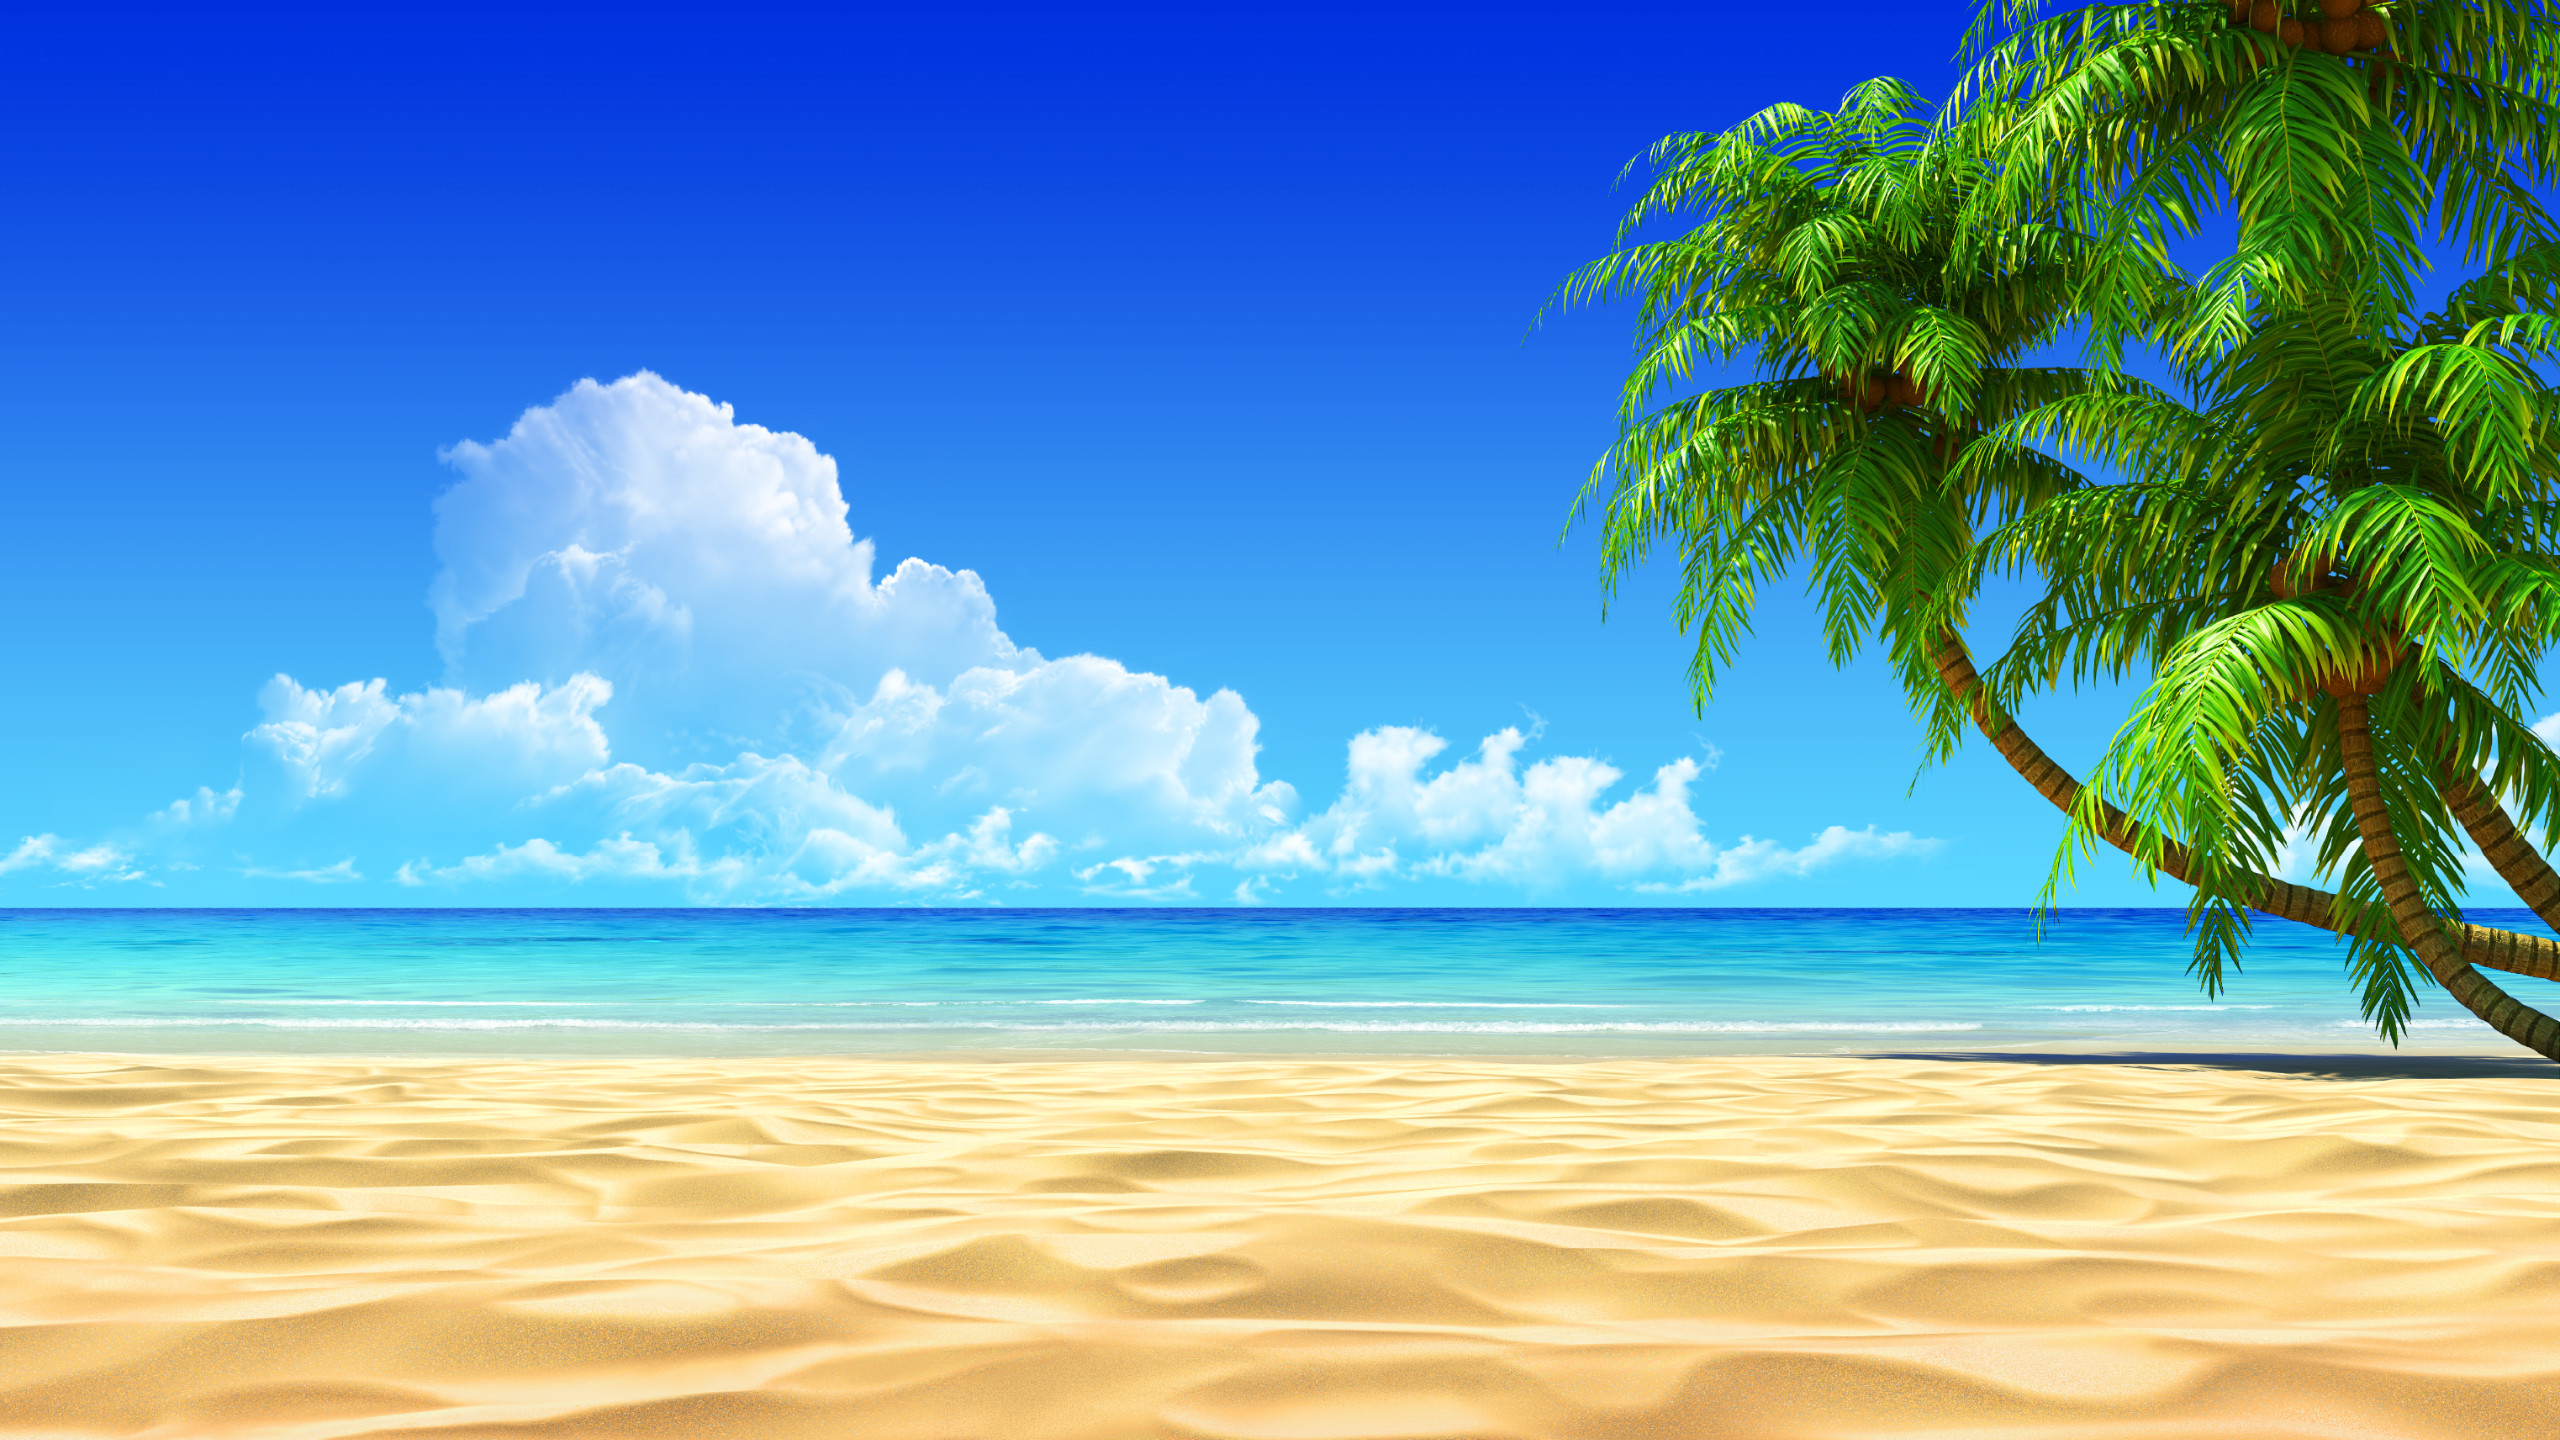 Tải hình nền bãi biển miễn phí là cách tuyệt vời để bạn có thể tận hưởng sự thoải mái và tràn đầy năng lượng từ bãi biển và mùa hè. Những bức ảnh đẹp và chất lượng nhiều màu sắc sẽ khiến bạn cảm thấy được tạo hoá ban tặng cho một bức tranh thiên nhiên tuyệt đẹp và xa hoa.